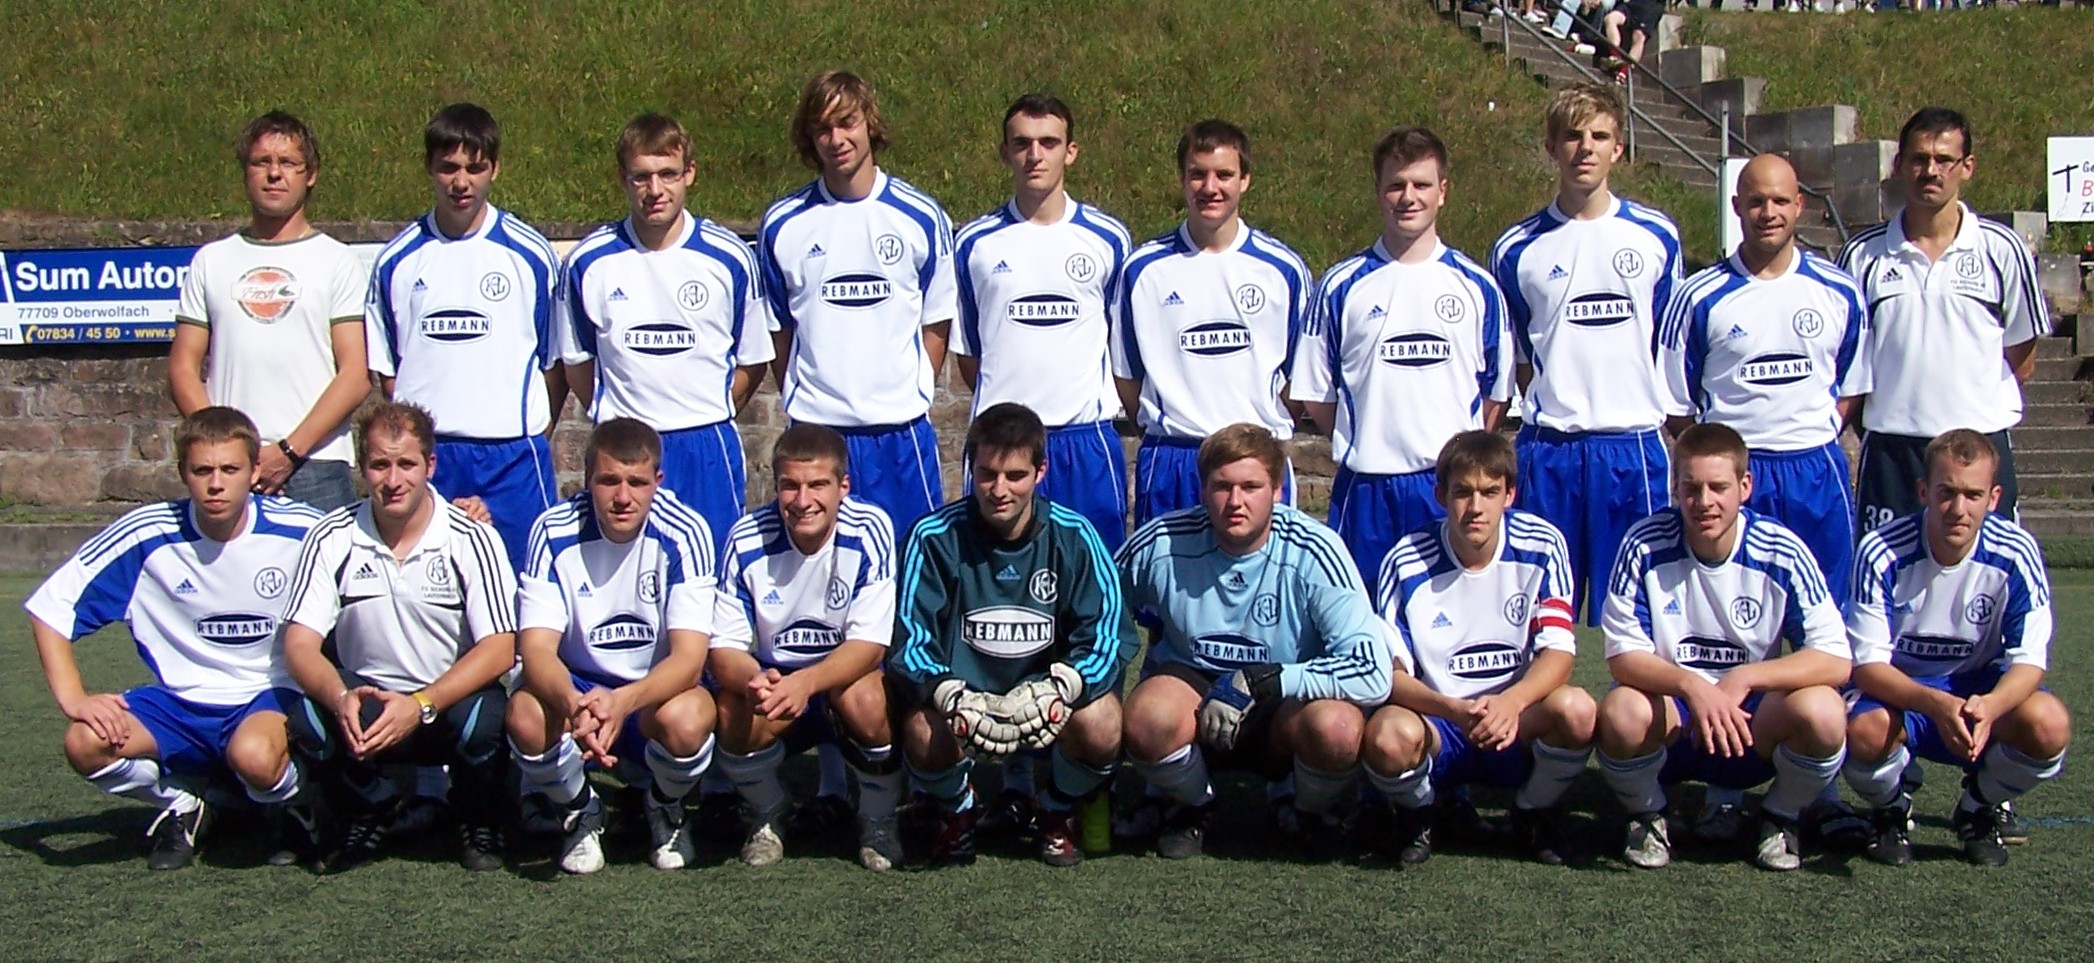 1.Mannschaft Saison 2009/2010